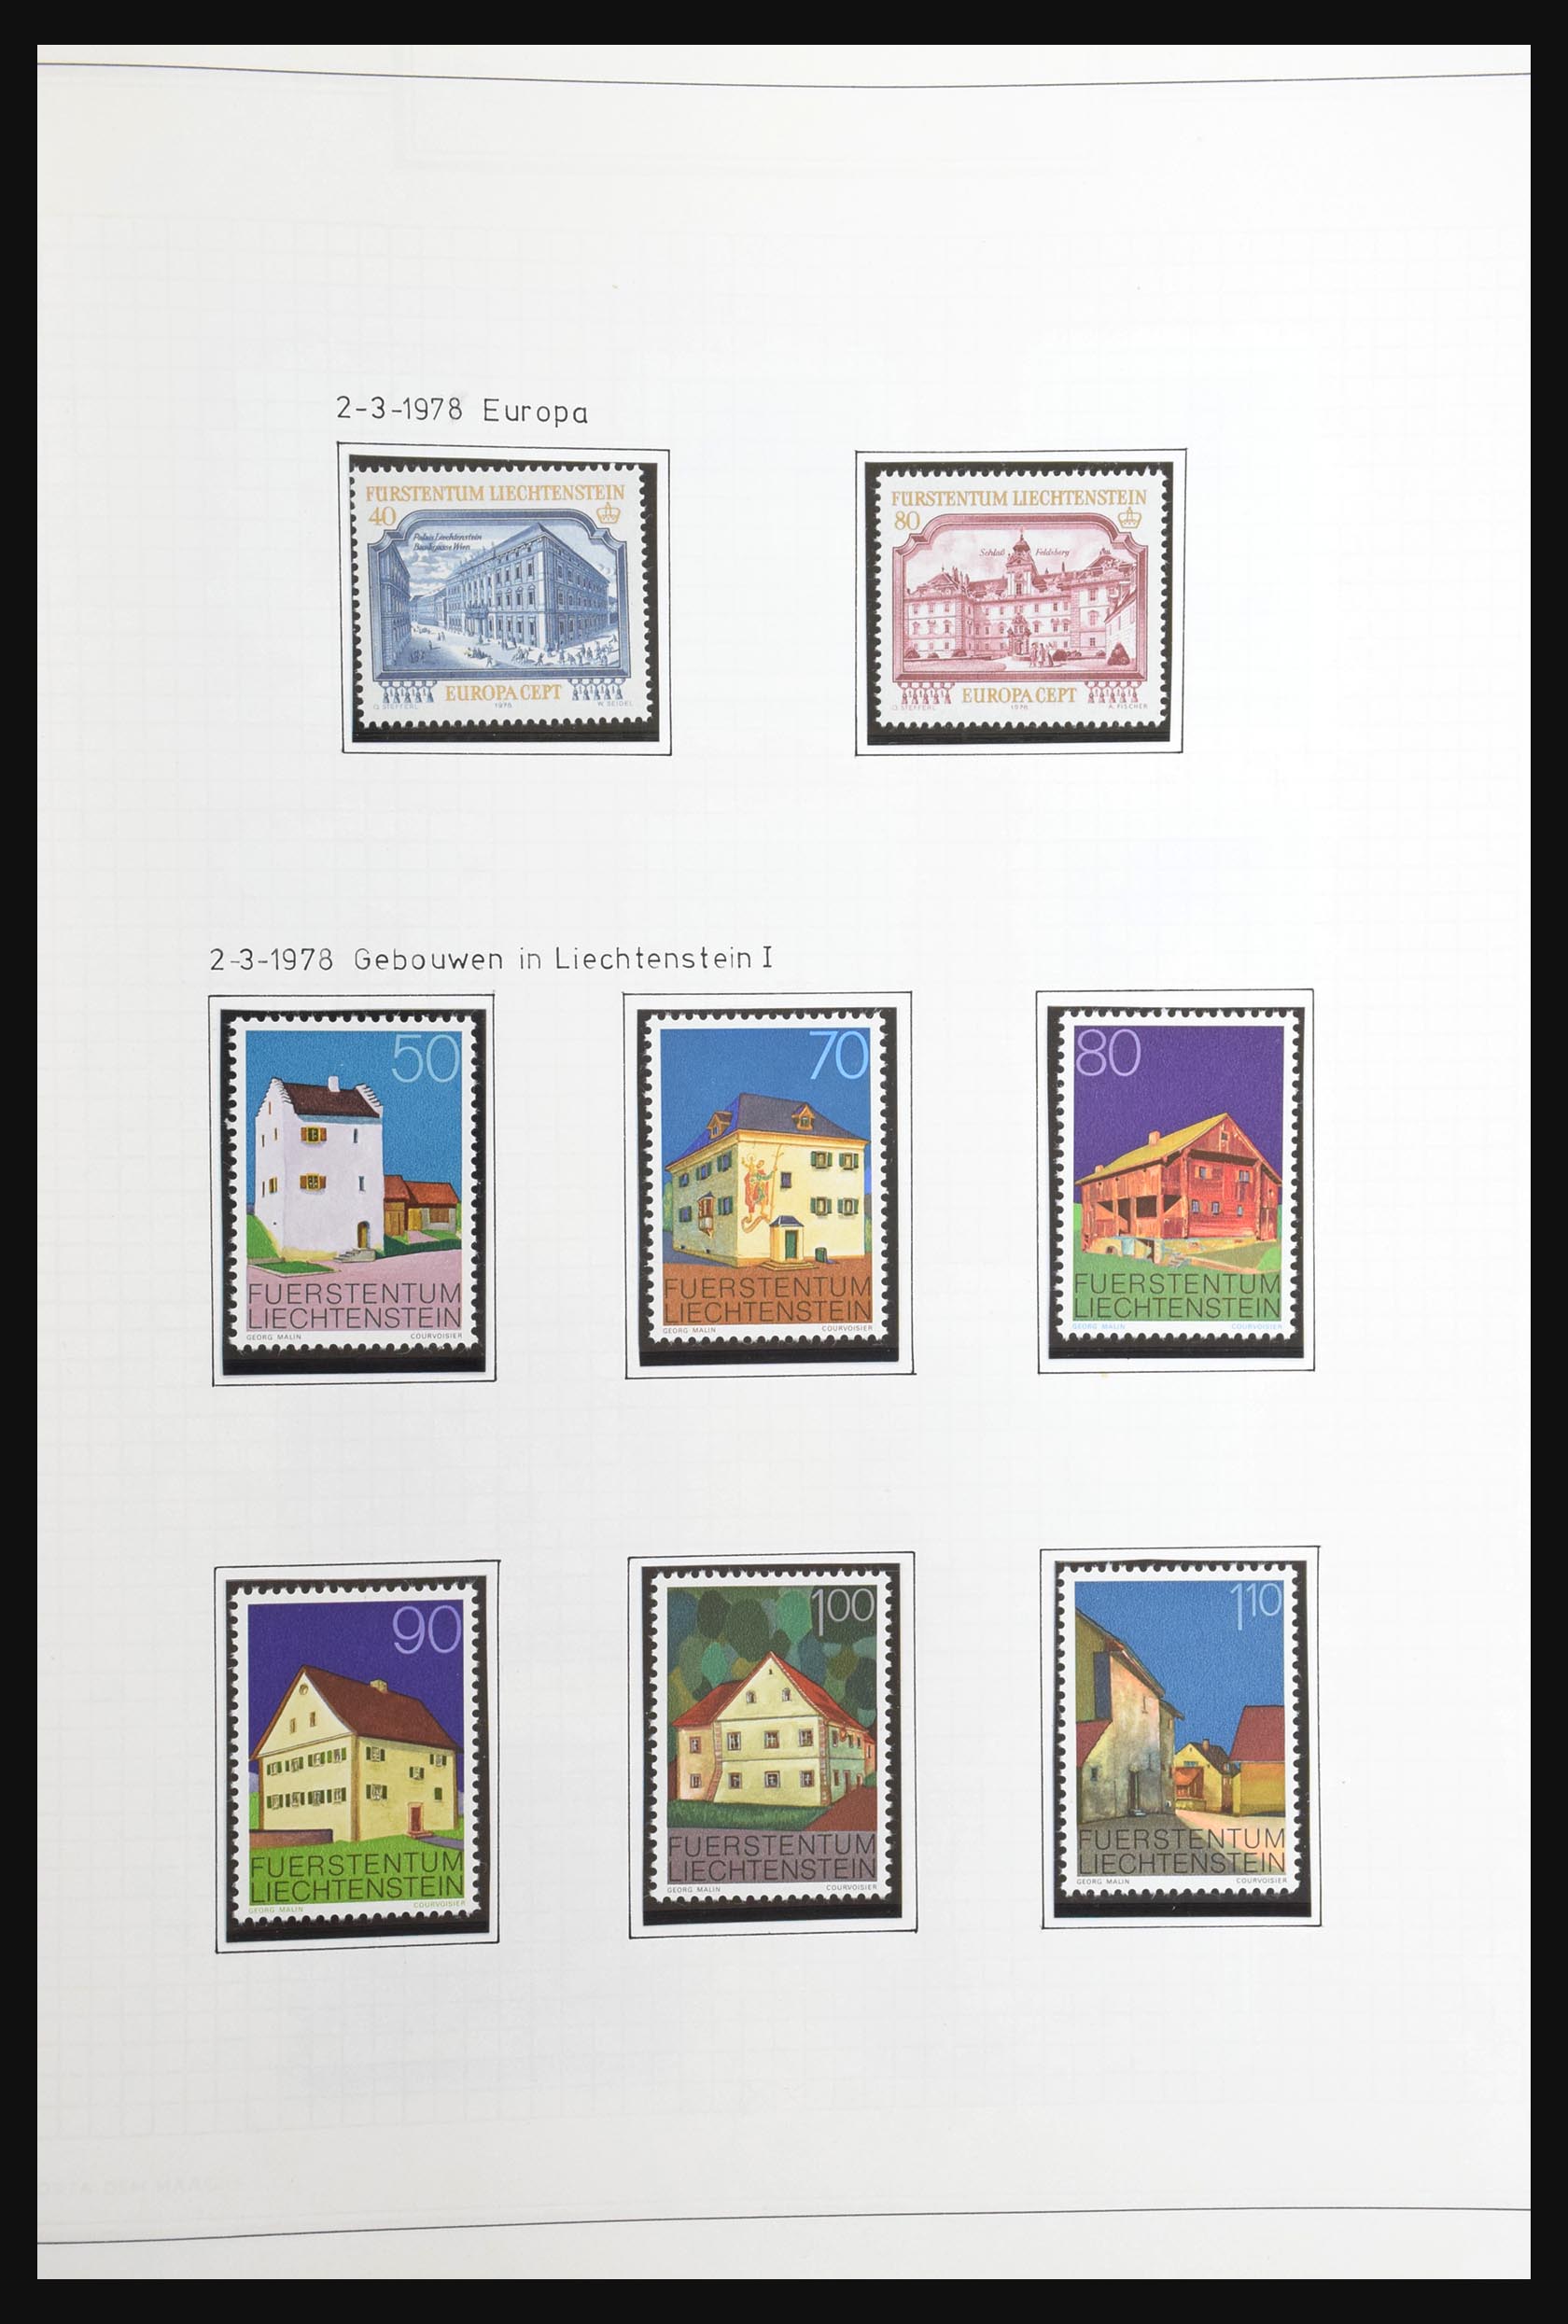 31131 067 - 31131 Liechtenstein 1912-2013.